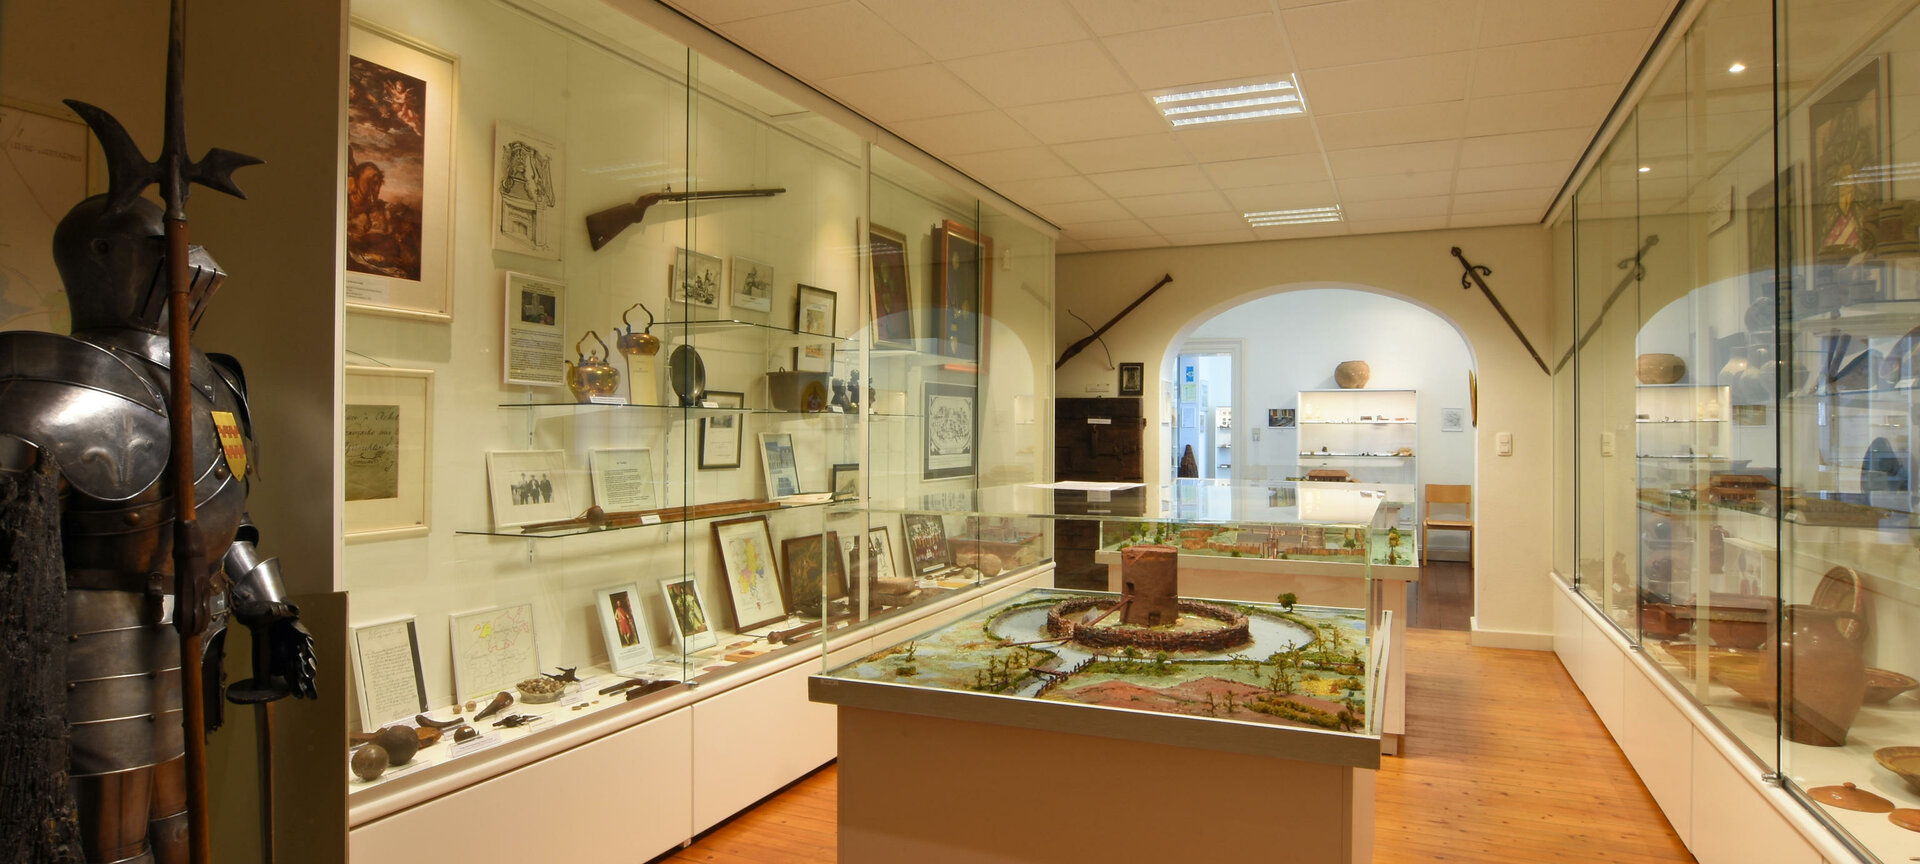 Grevenbroekmuseum - Grevenbroekmuseum